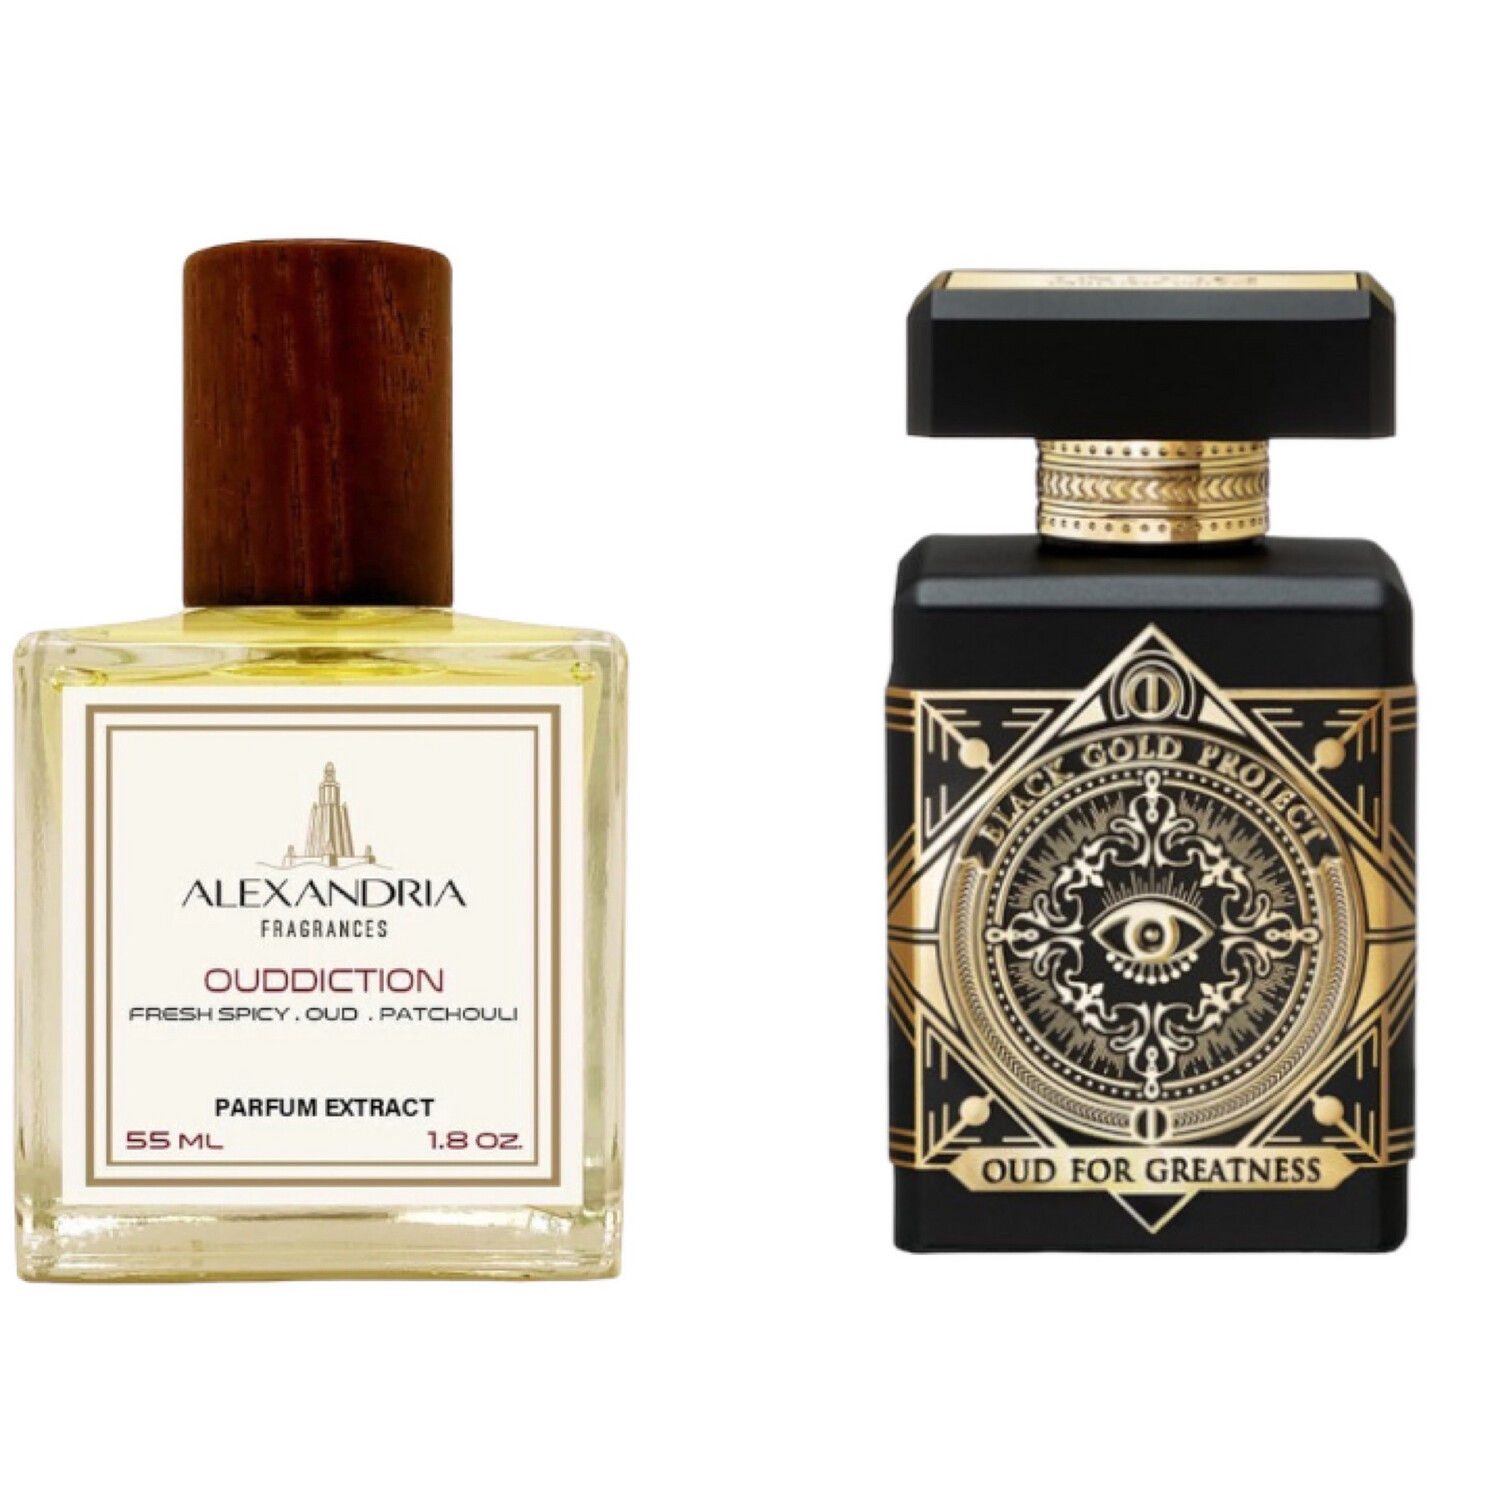 Ouddiction Inspirado en Oud For Greatness Initio Perfumes Prives 55ML extracto perfume Alexandria Fragances